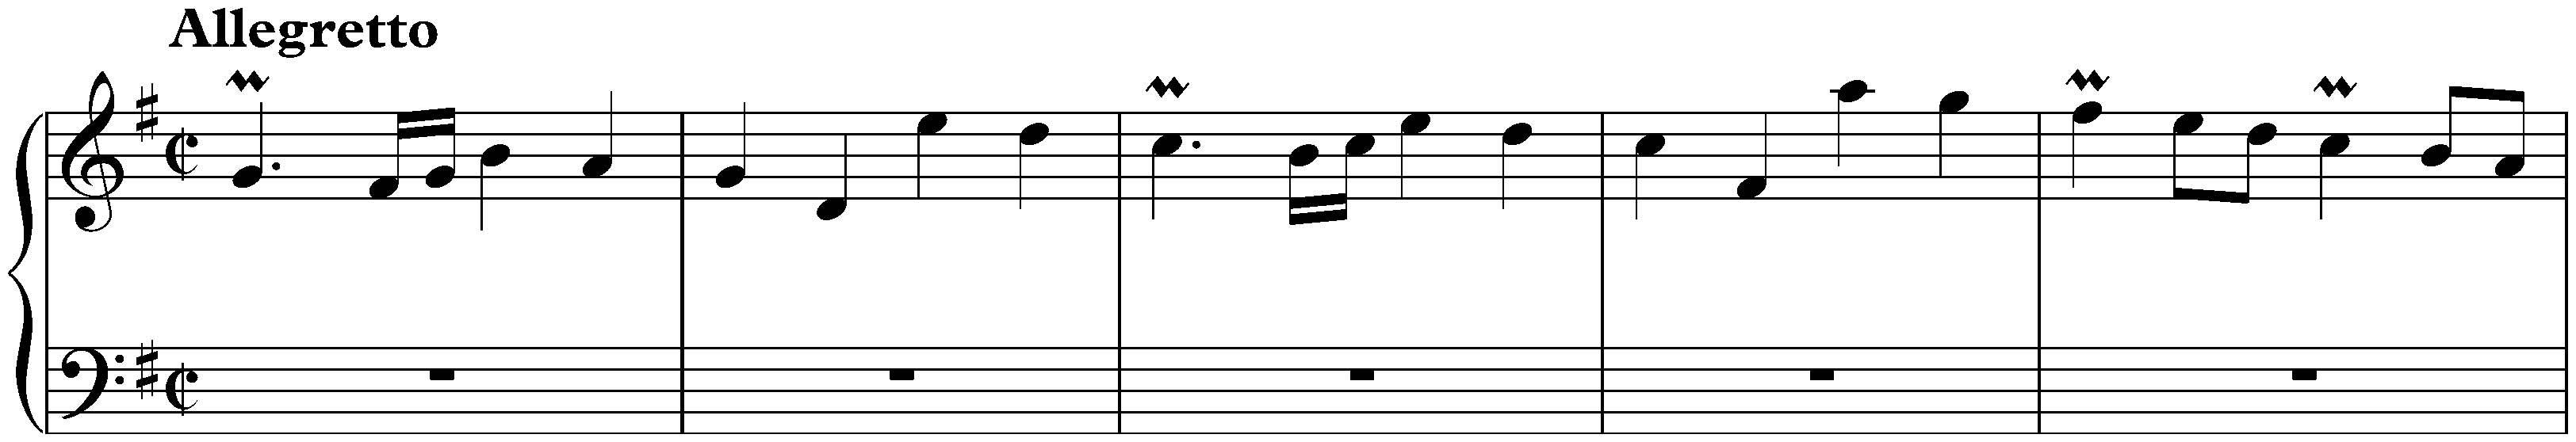 Sonata in G major, K. 520